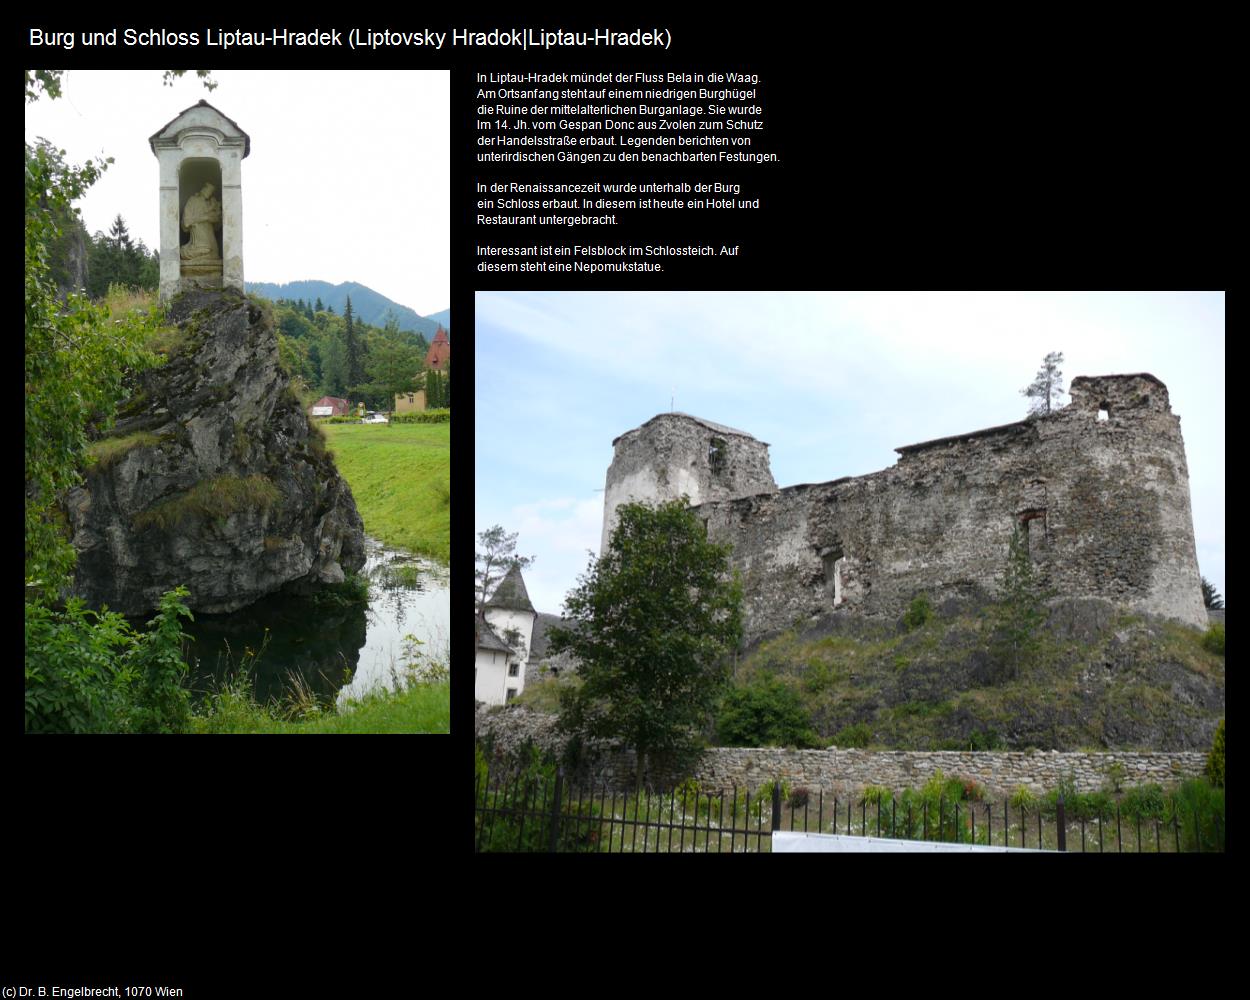 Burg und Schloss Liptau-Hradek (Liptovsky Hradok|Liptau-Hradek) in SLOWAKEI